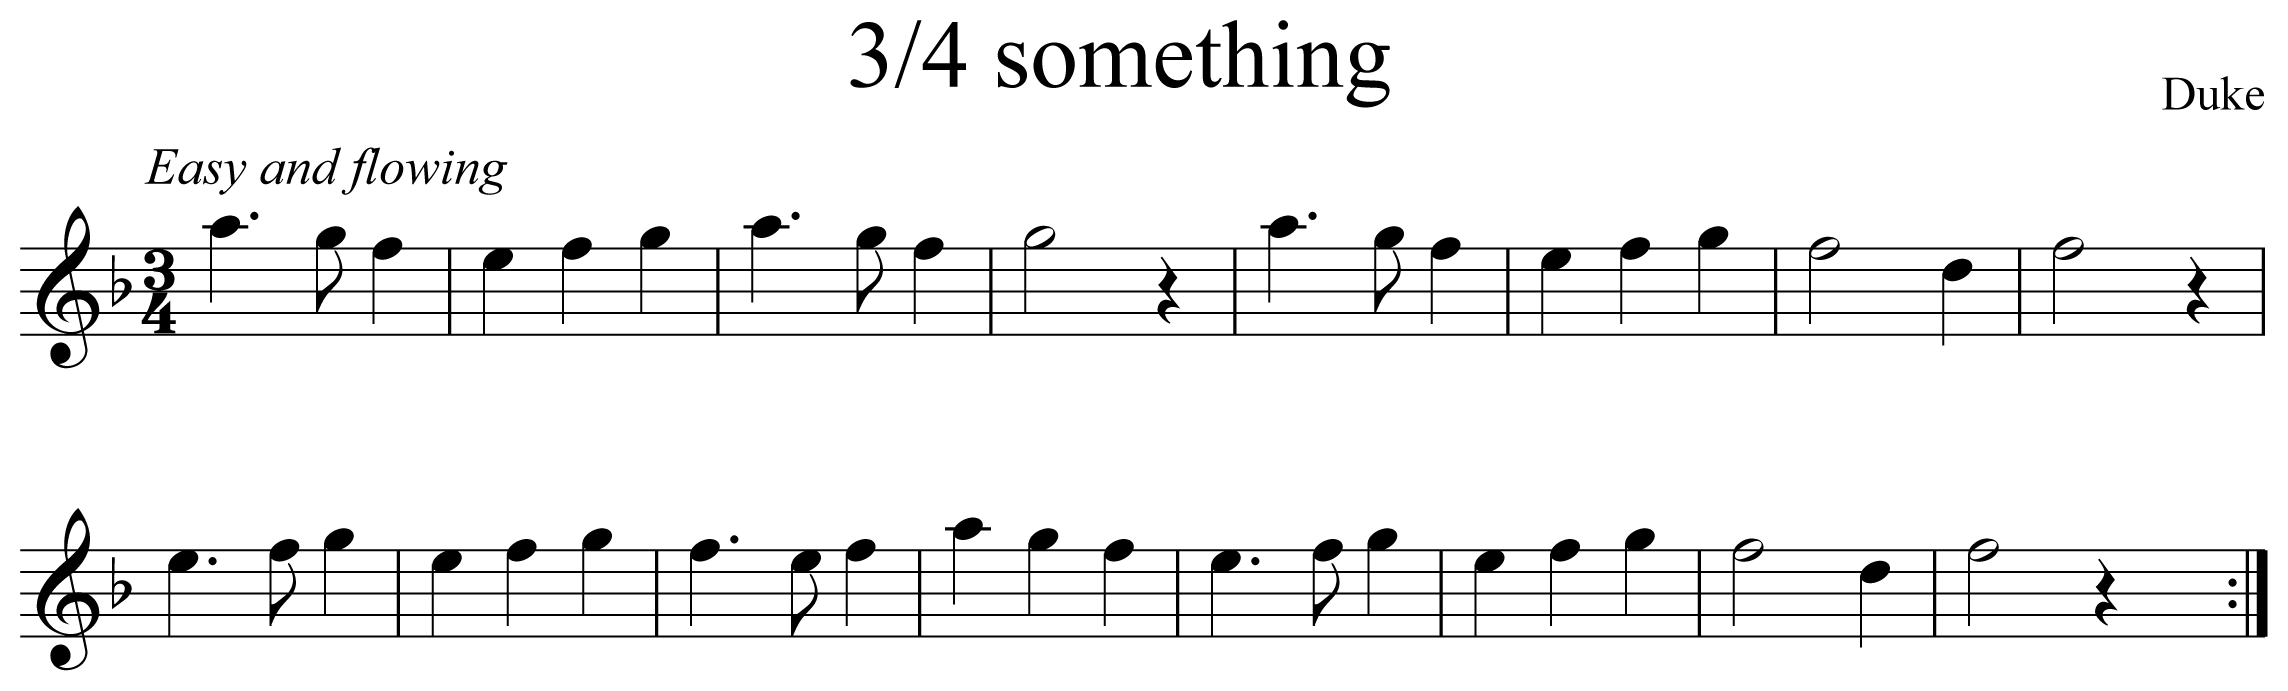 3/4 Something Notation Flute